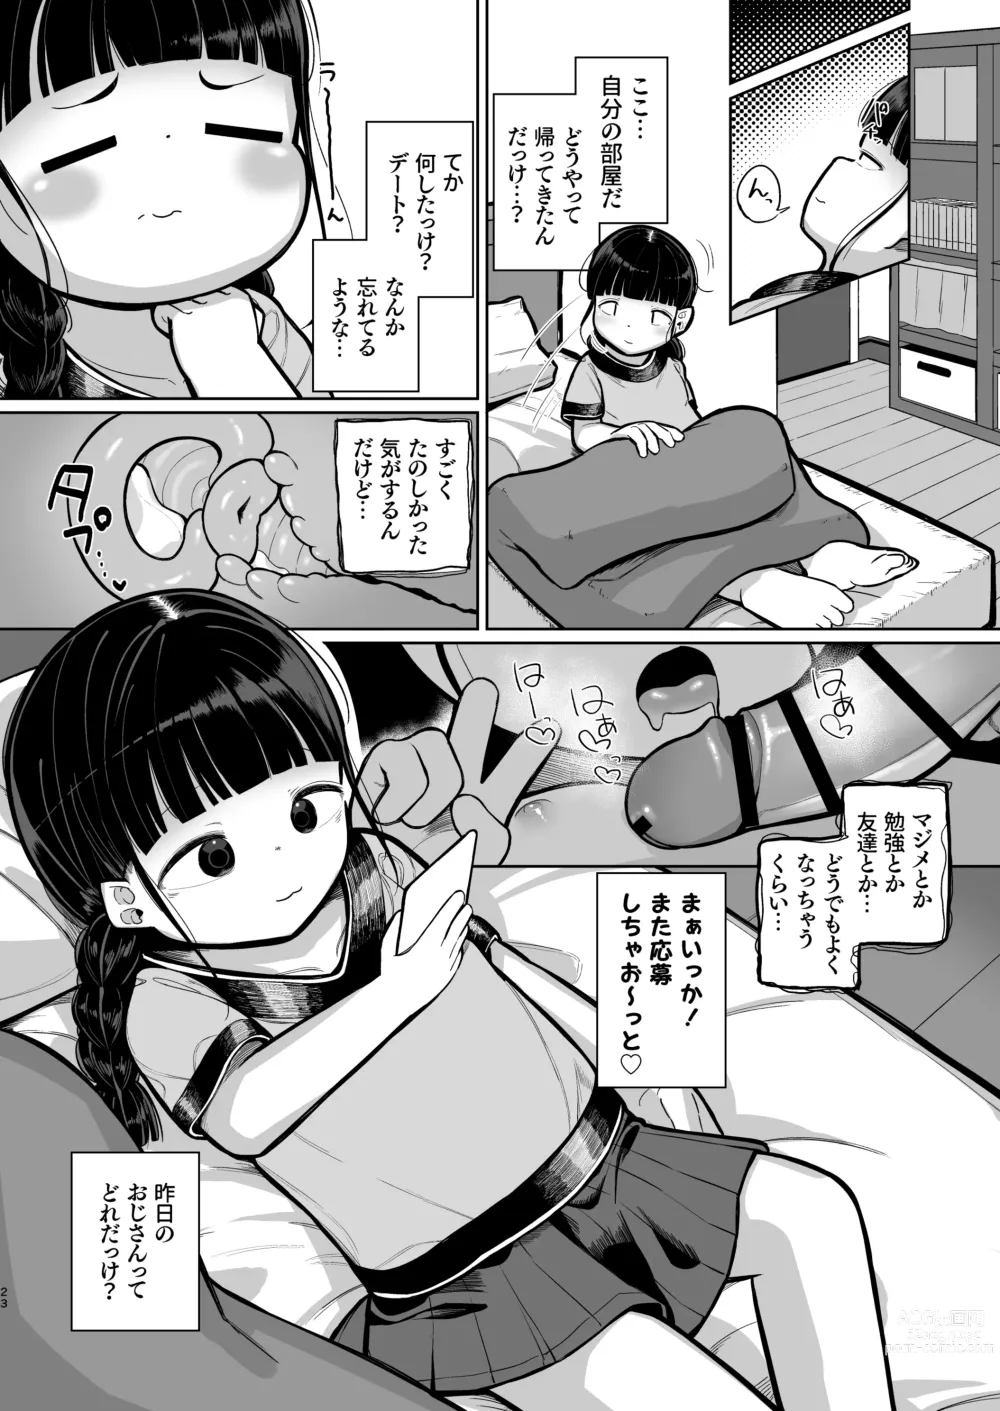 Page 23 of doujinshi Punipuni Majime Loli ga Ecchi ni Hamacchau made